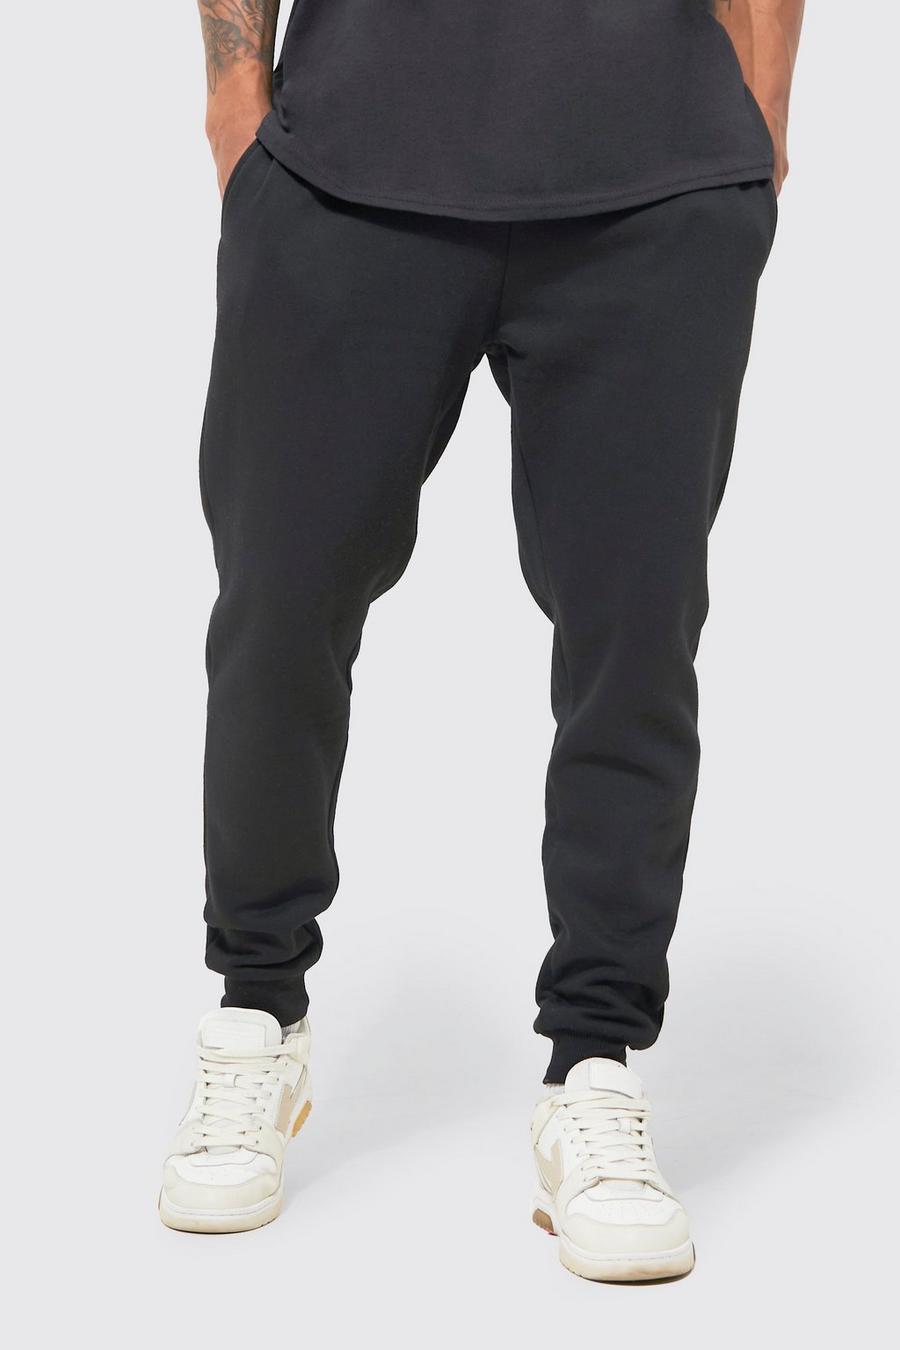 Pantaloni tuta Basic Skinny Fit, Black nero